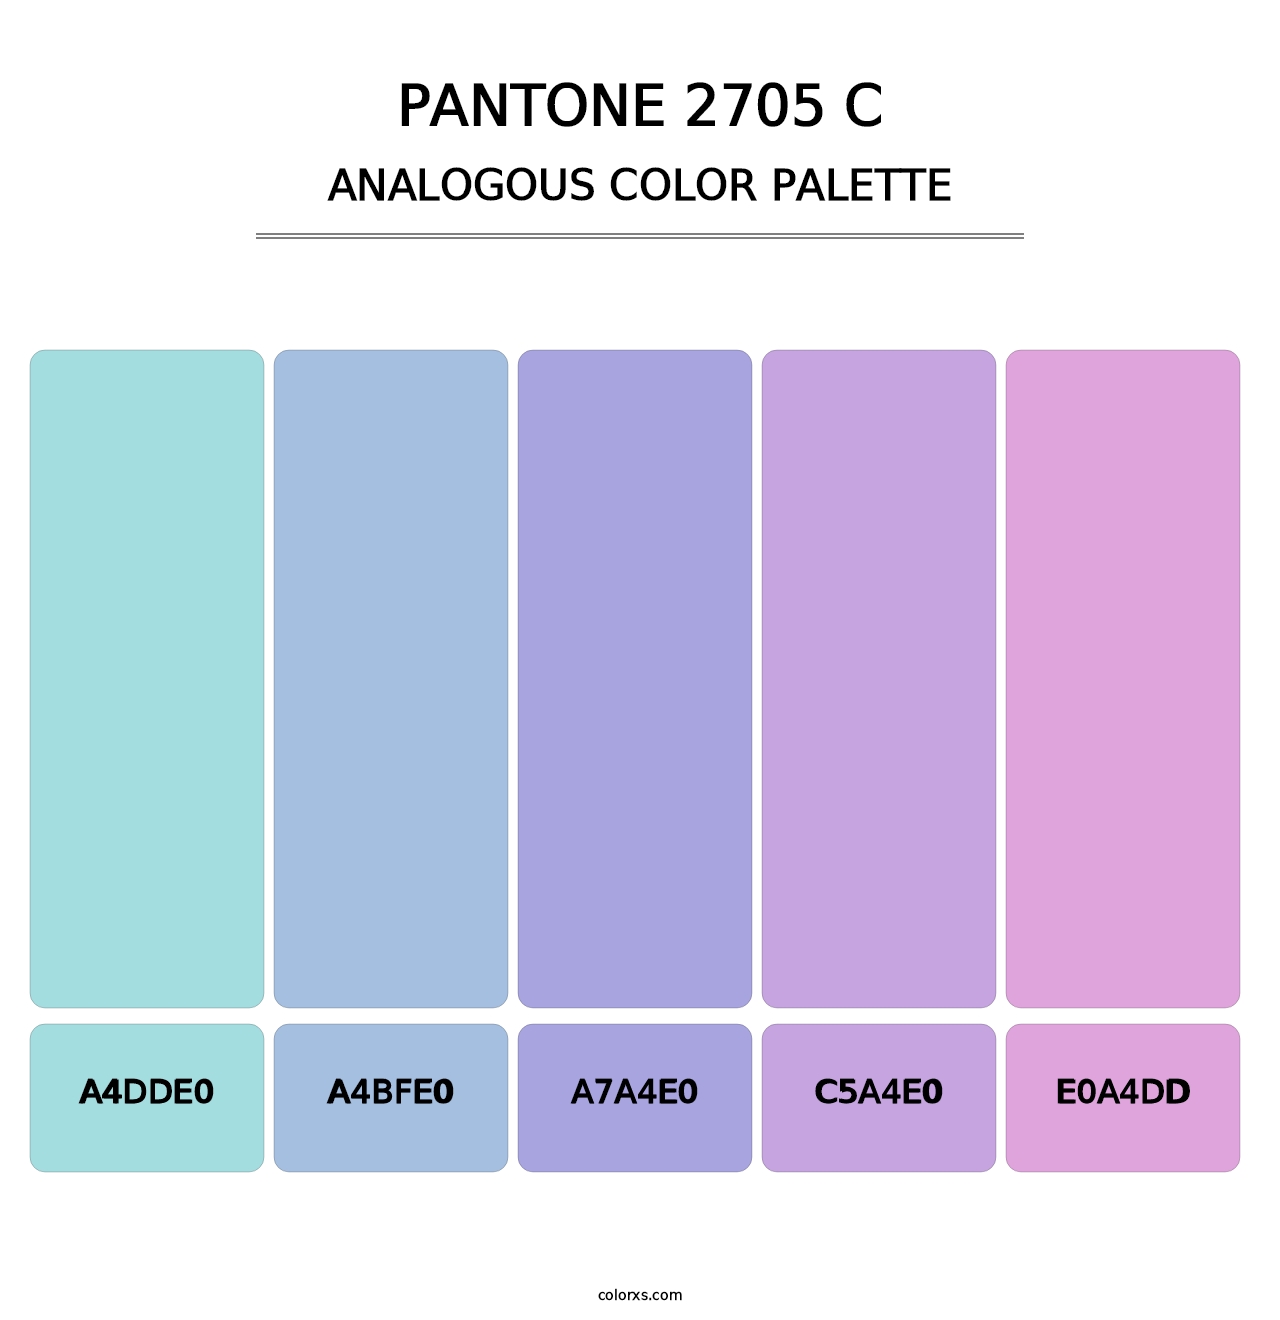 PANTONE 2705 C - Analogous Color Palette